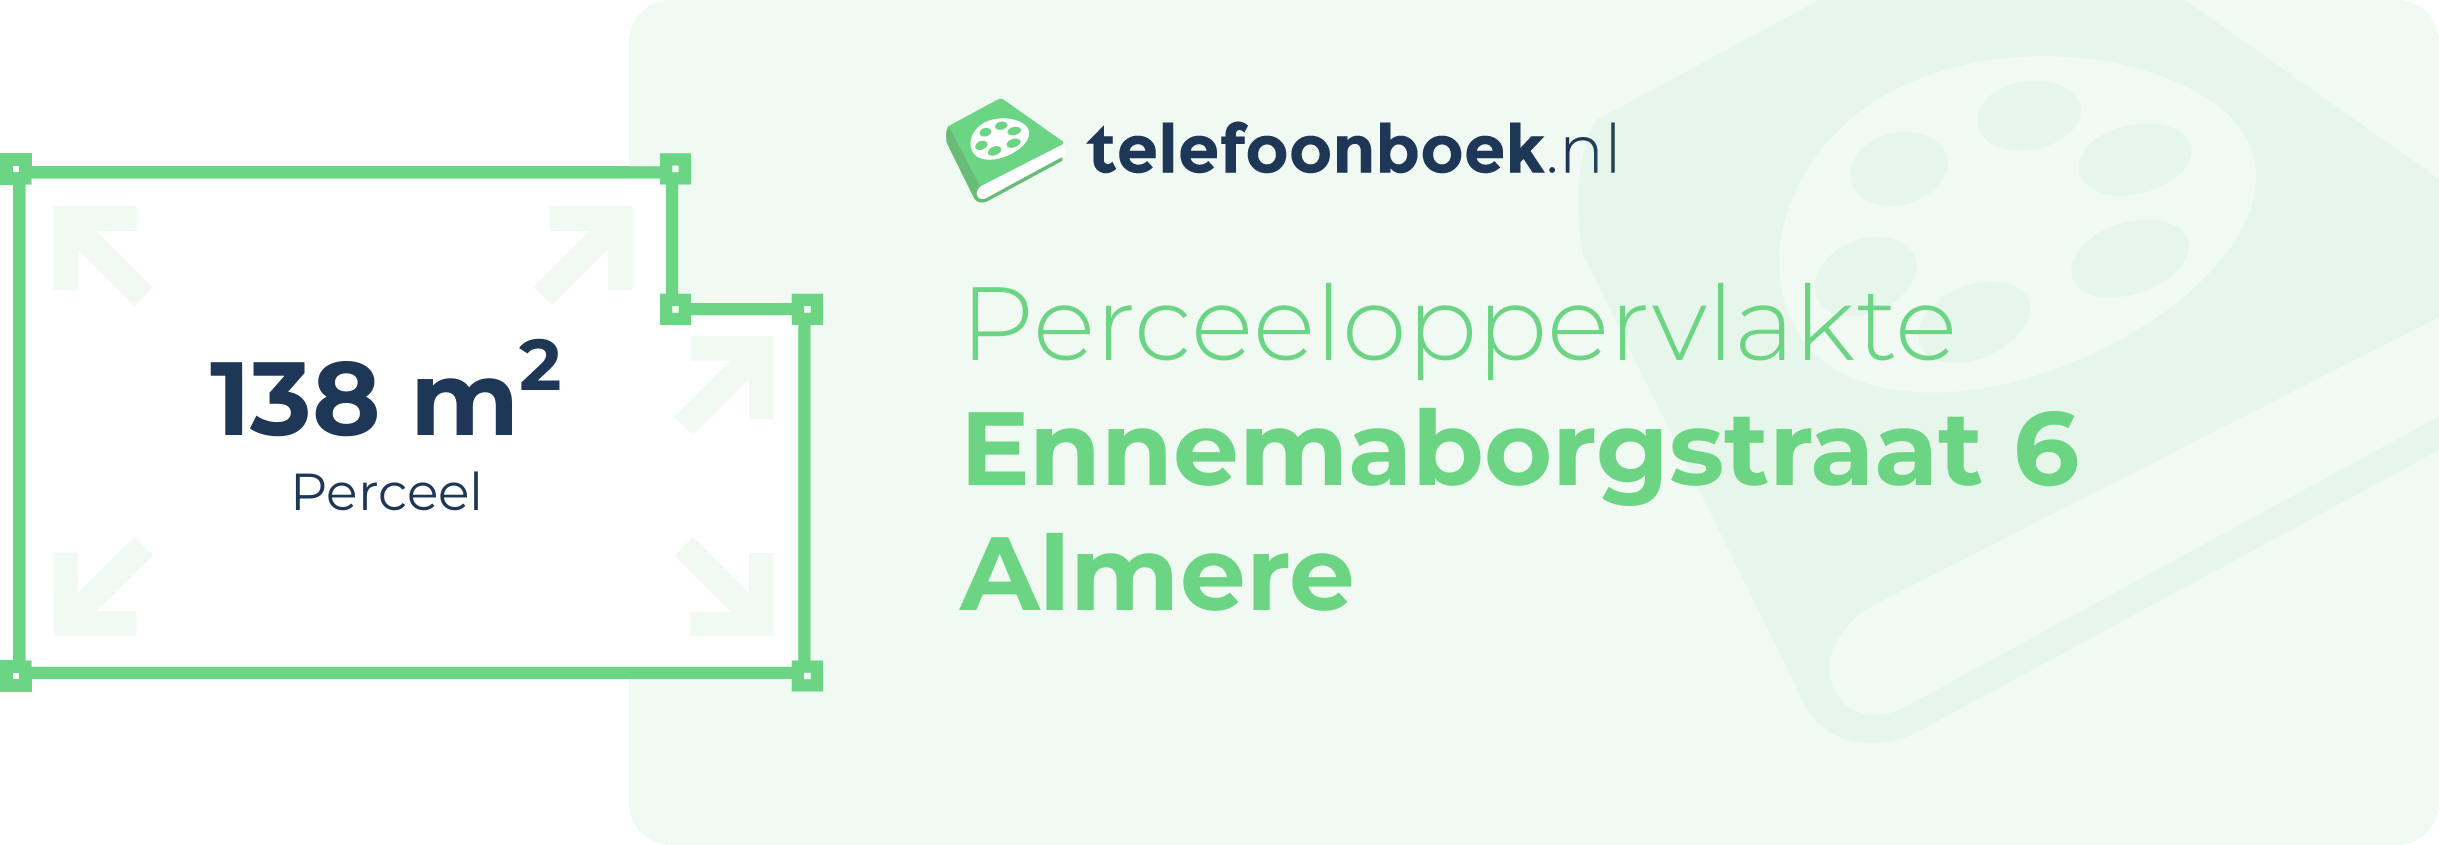 Perceeloppervlakte Ennemaborgstraat 6 Almere